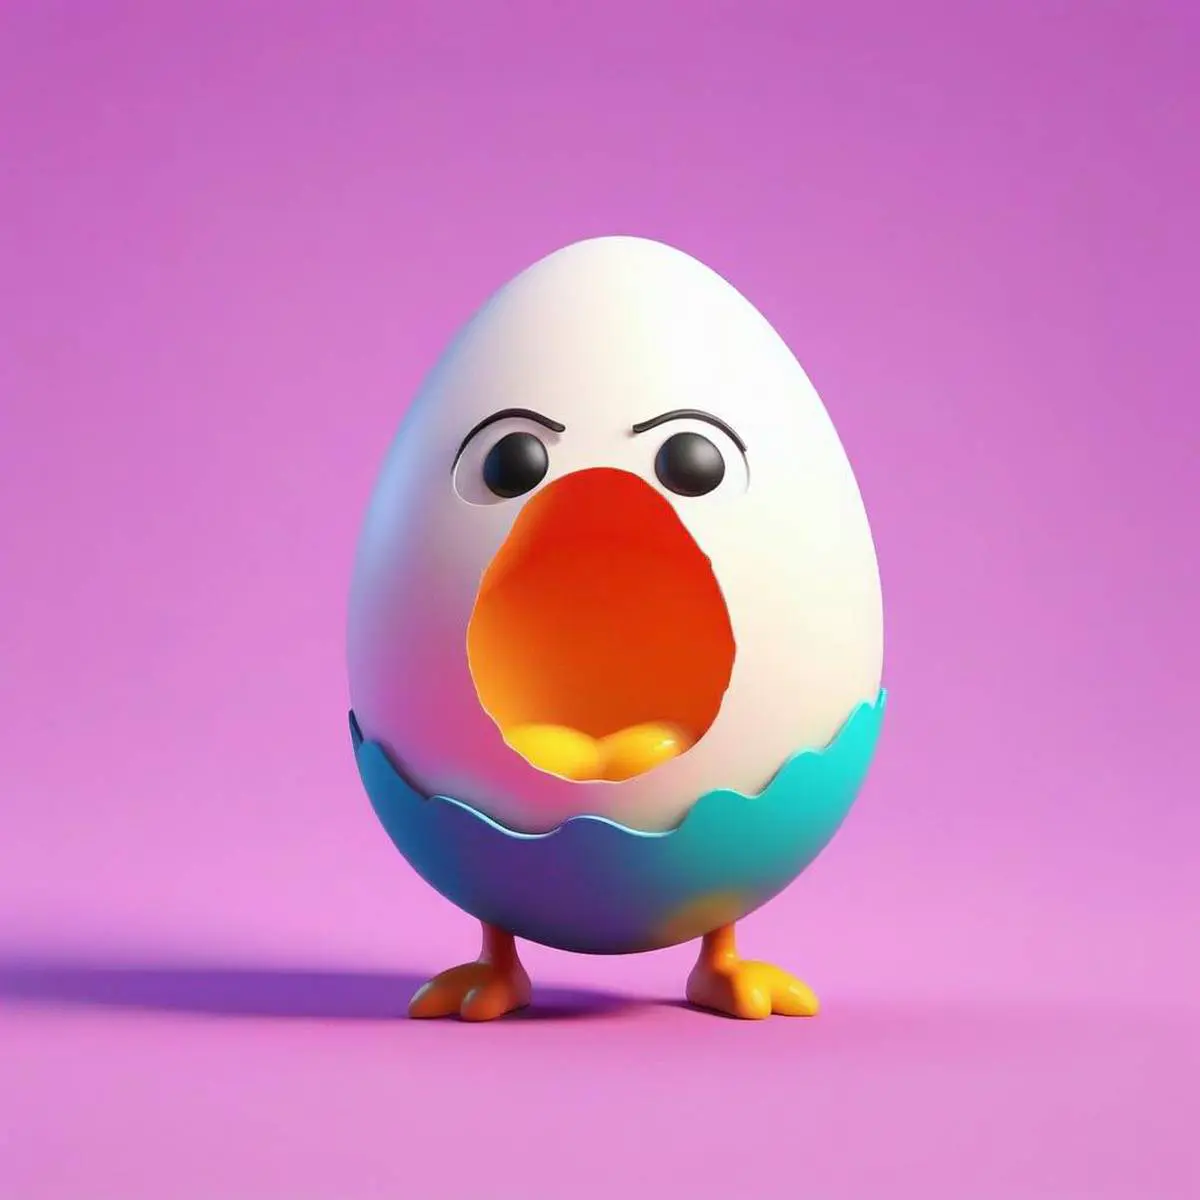 Eggcited puns